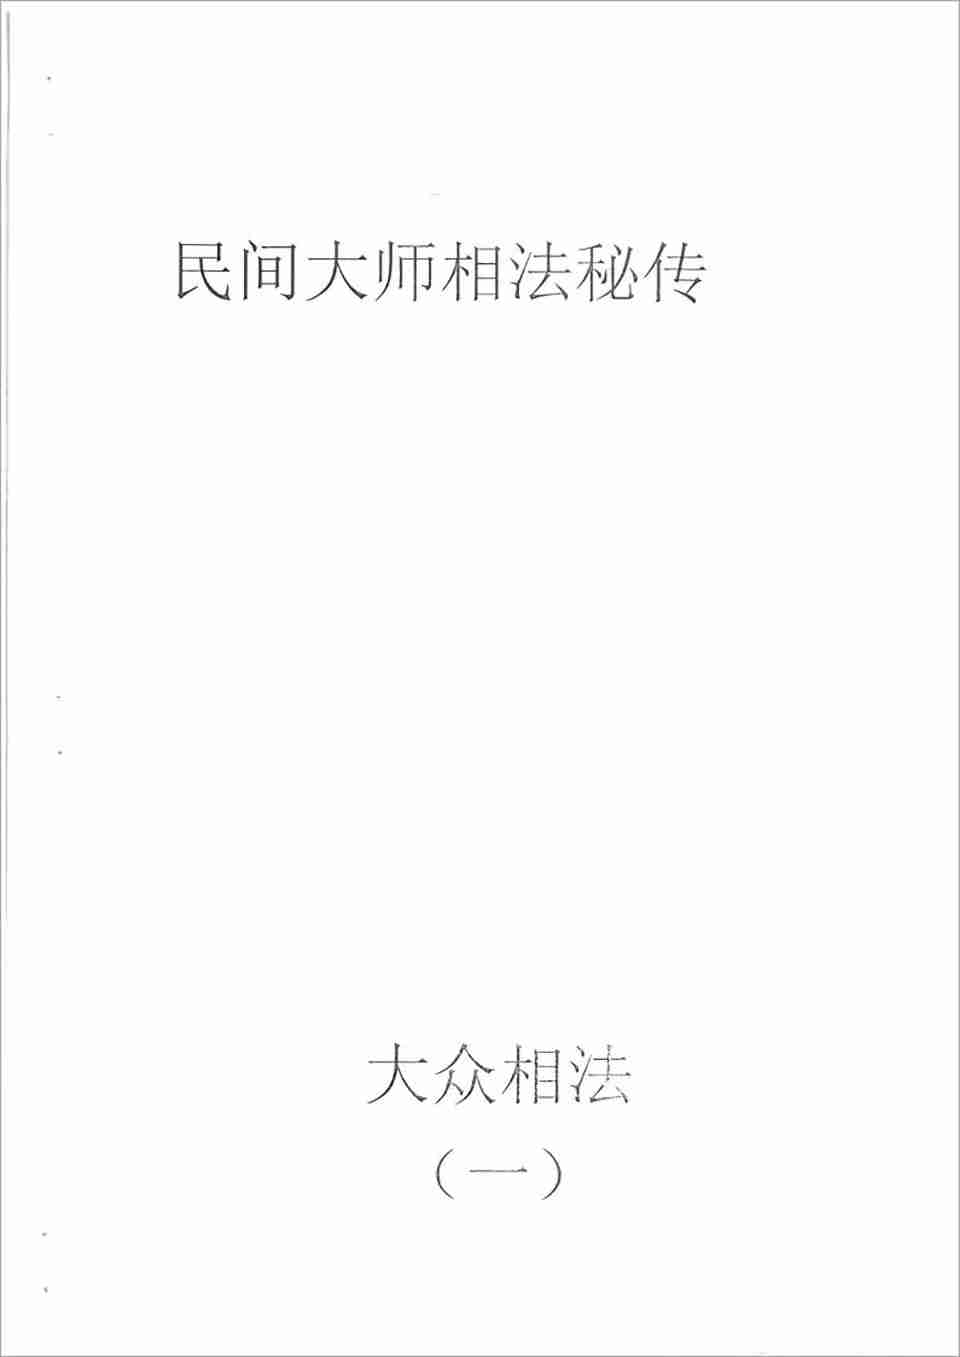 何培甫大眾相法實戰授徒手寫資料1（60頁）.pdf